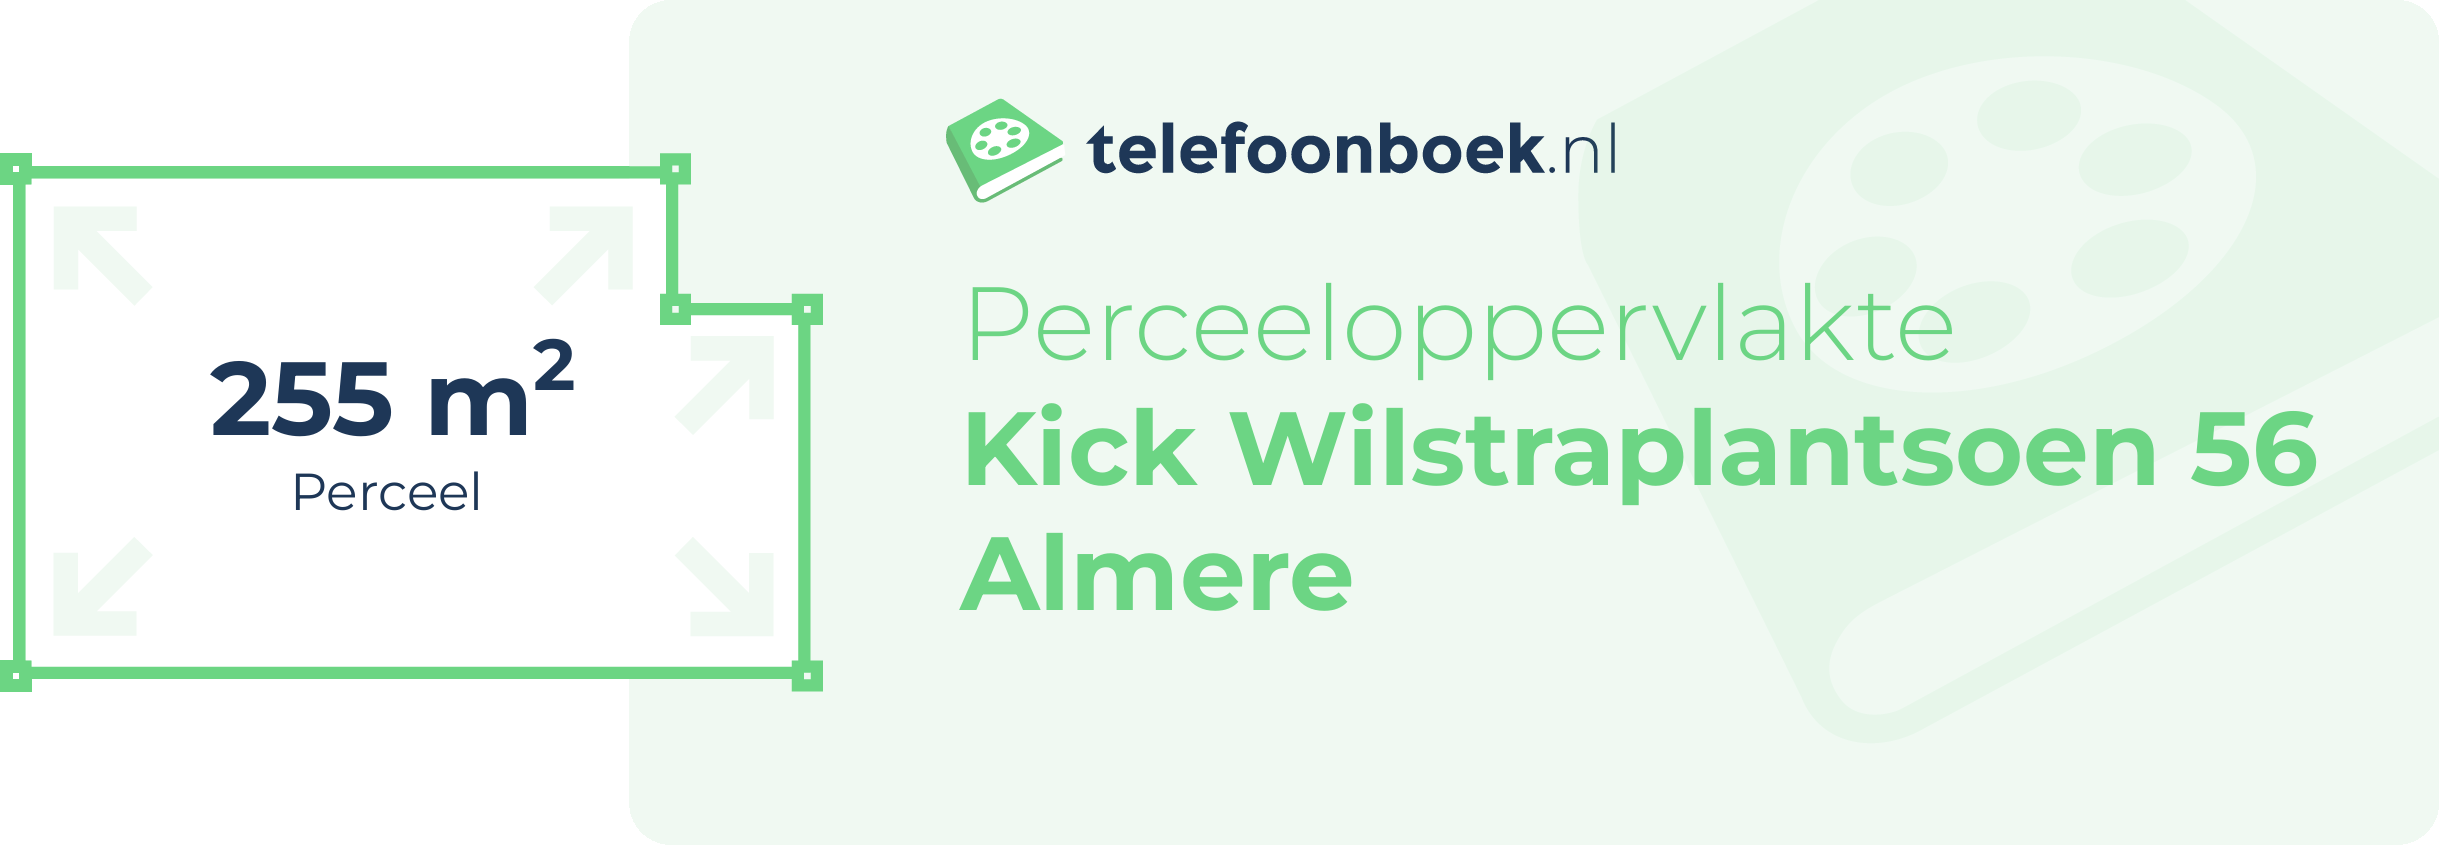 Perceeloppervlakte Kick Wilstraplantsoen 56 Almere